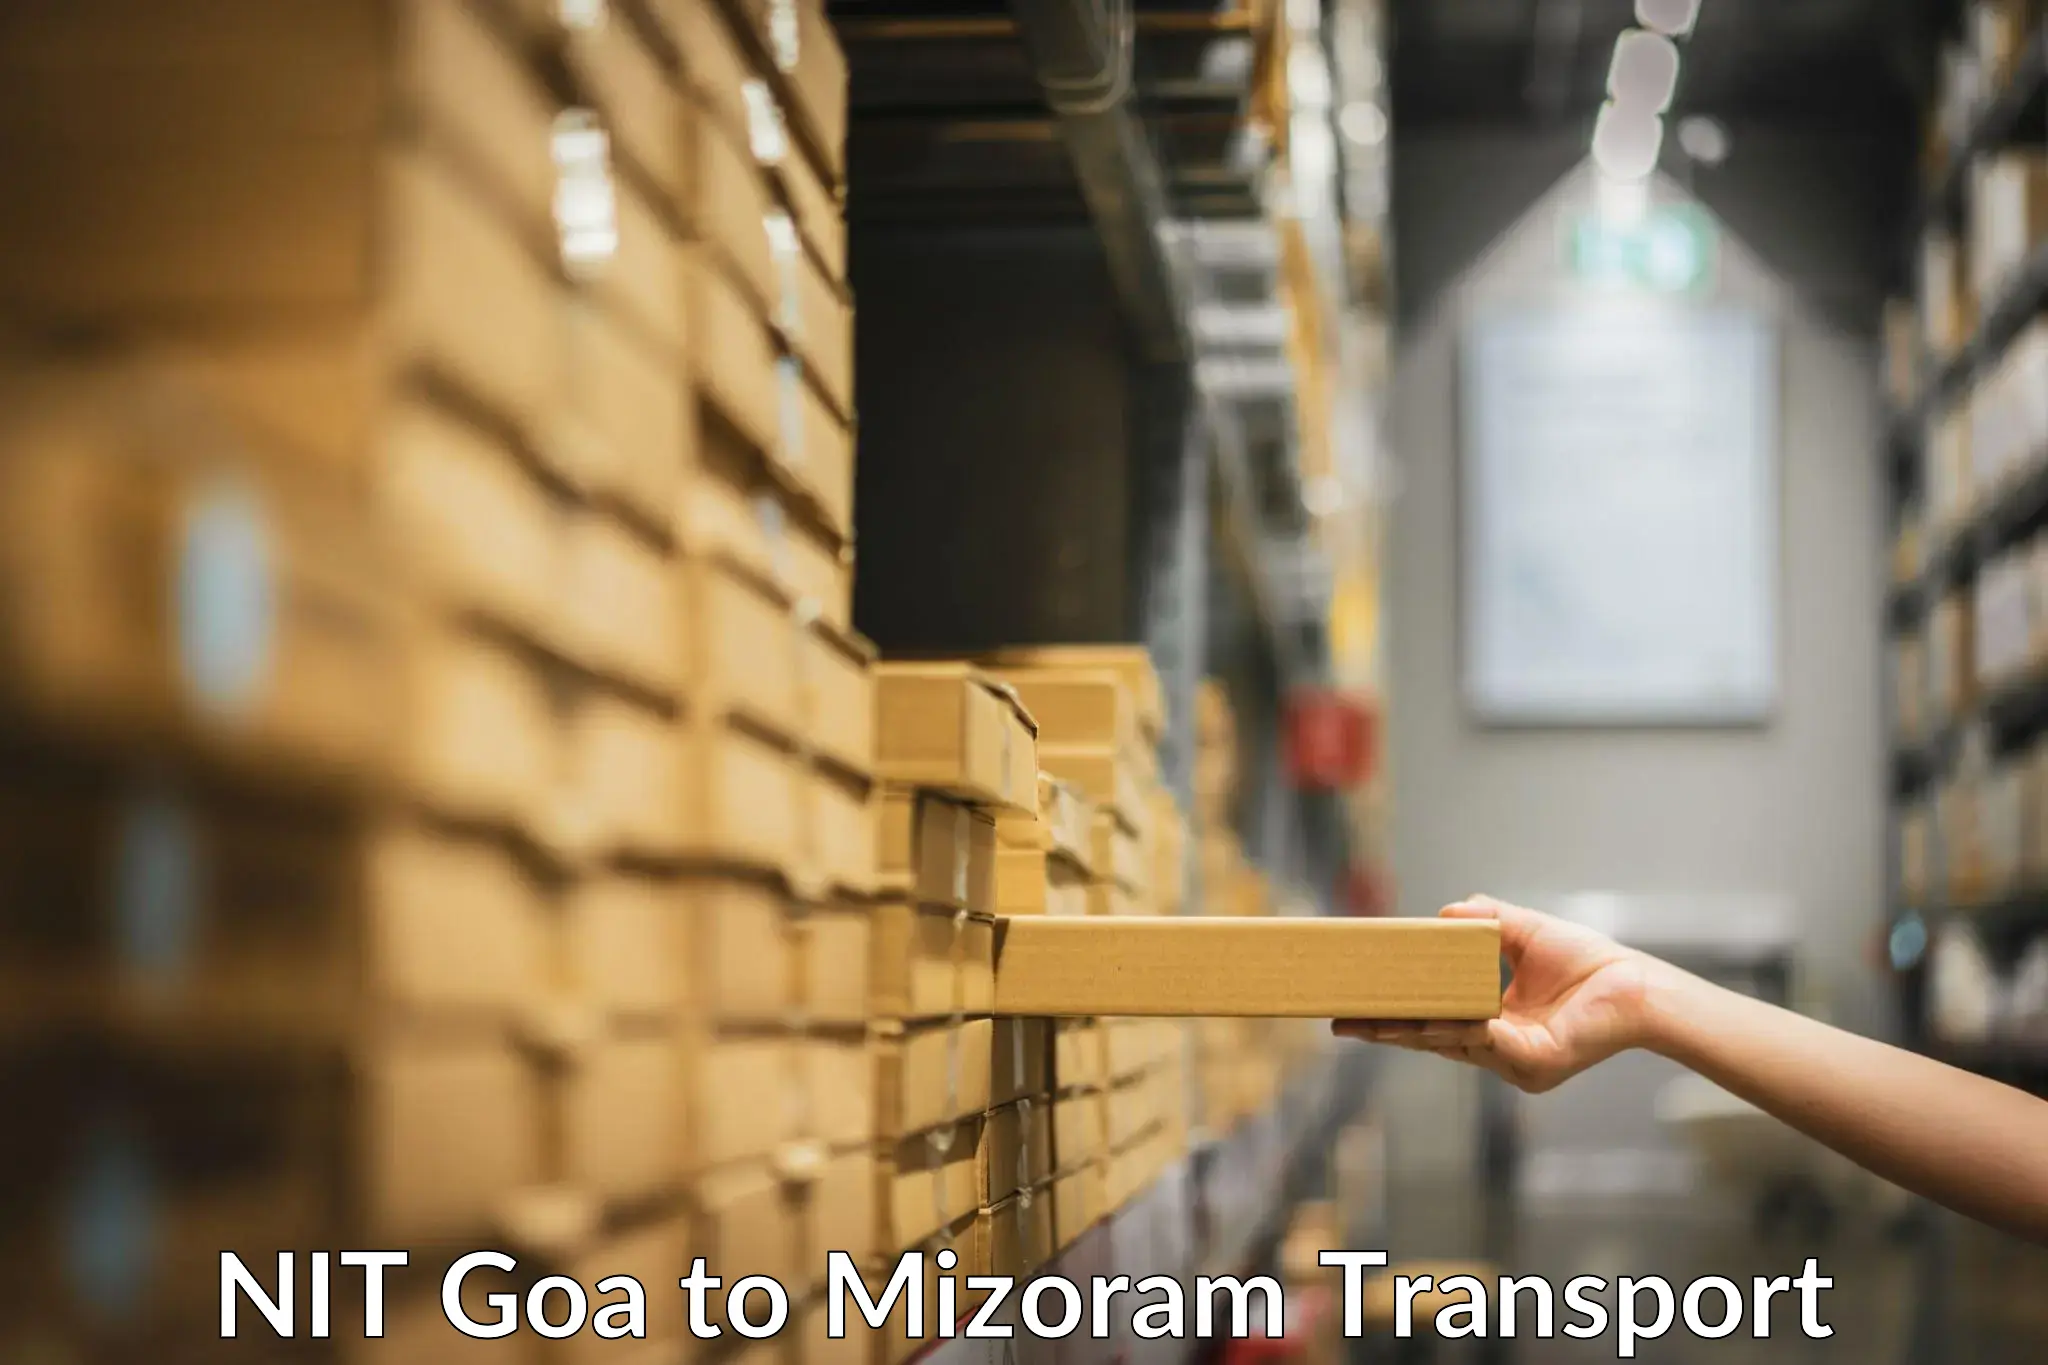 Nearby transport service NIT Goa to Mizoram